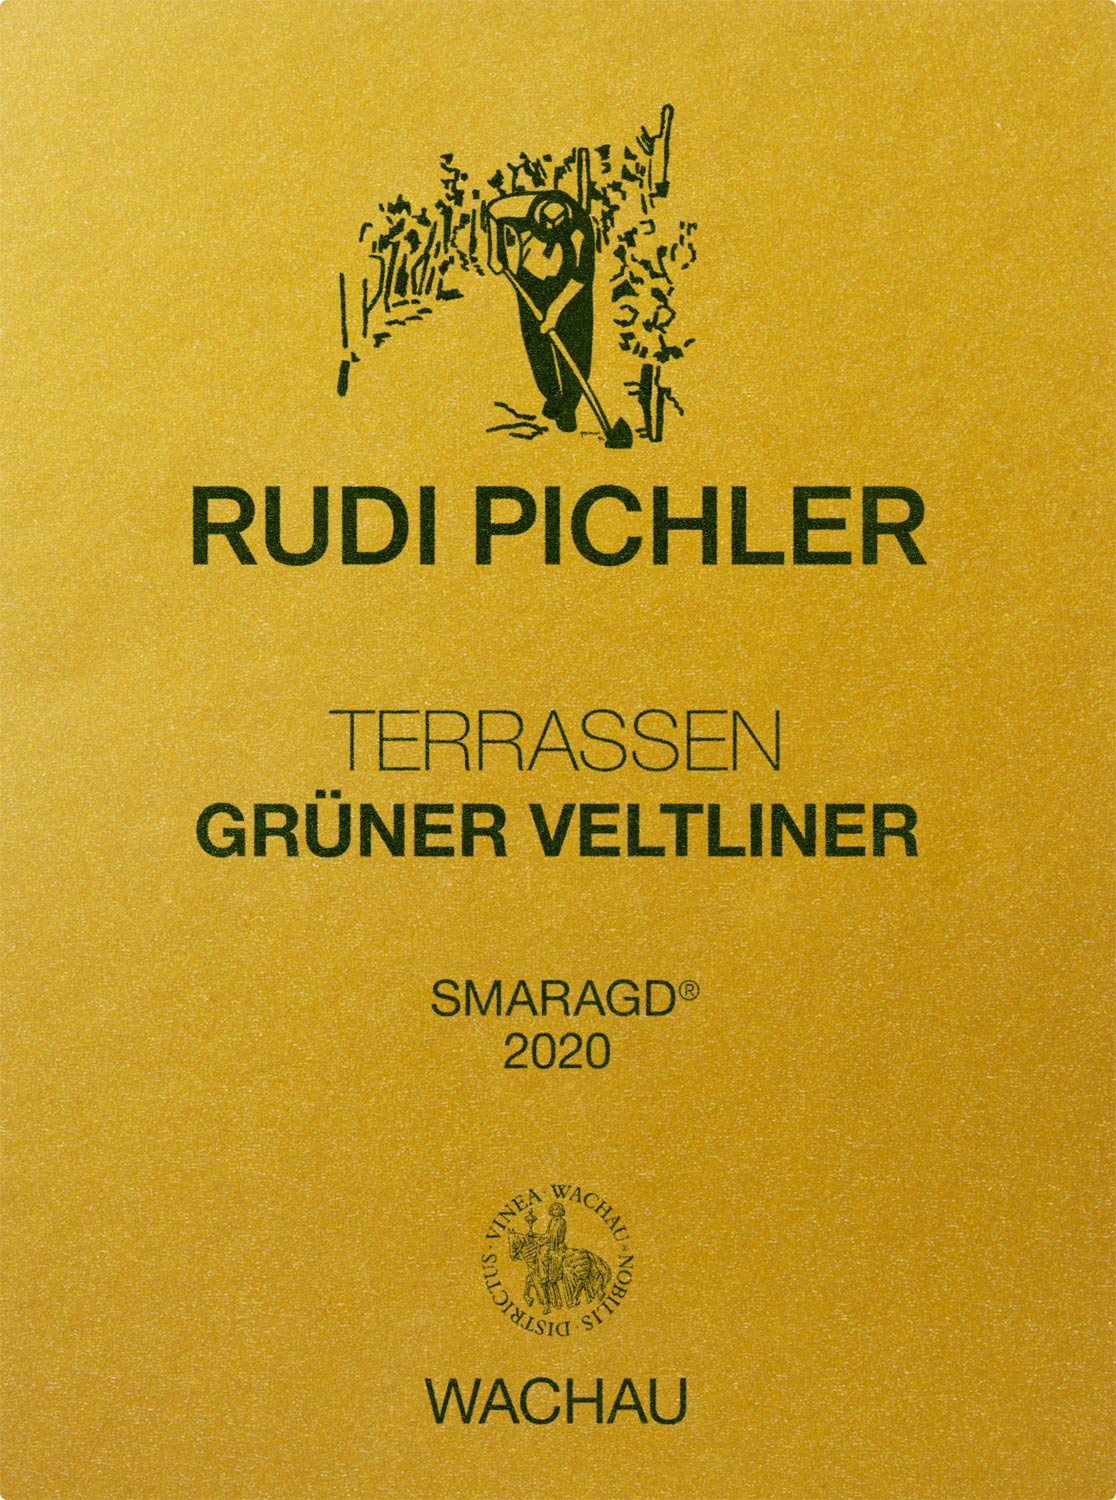 Rudi Pichler Grüner Veltliner Terrassen Smaragd 2020